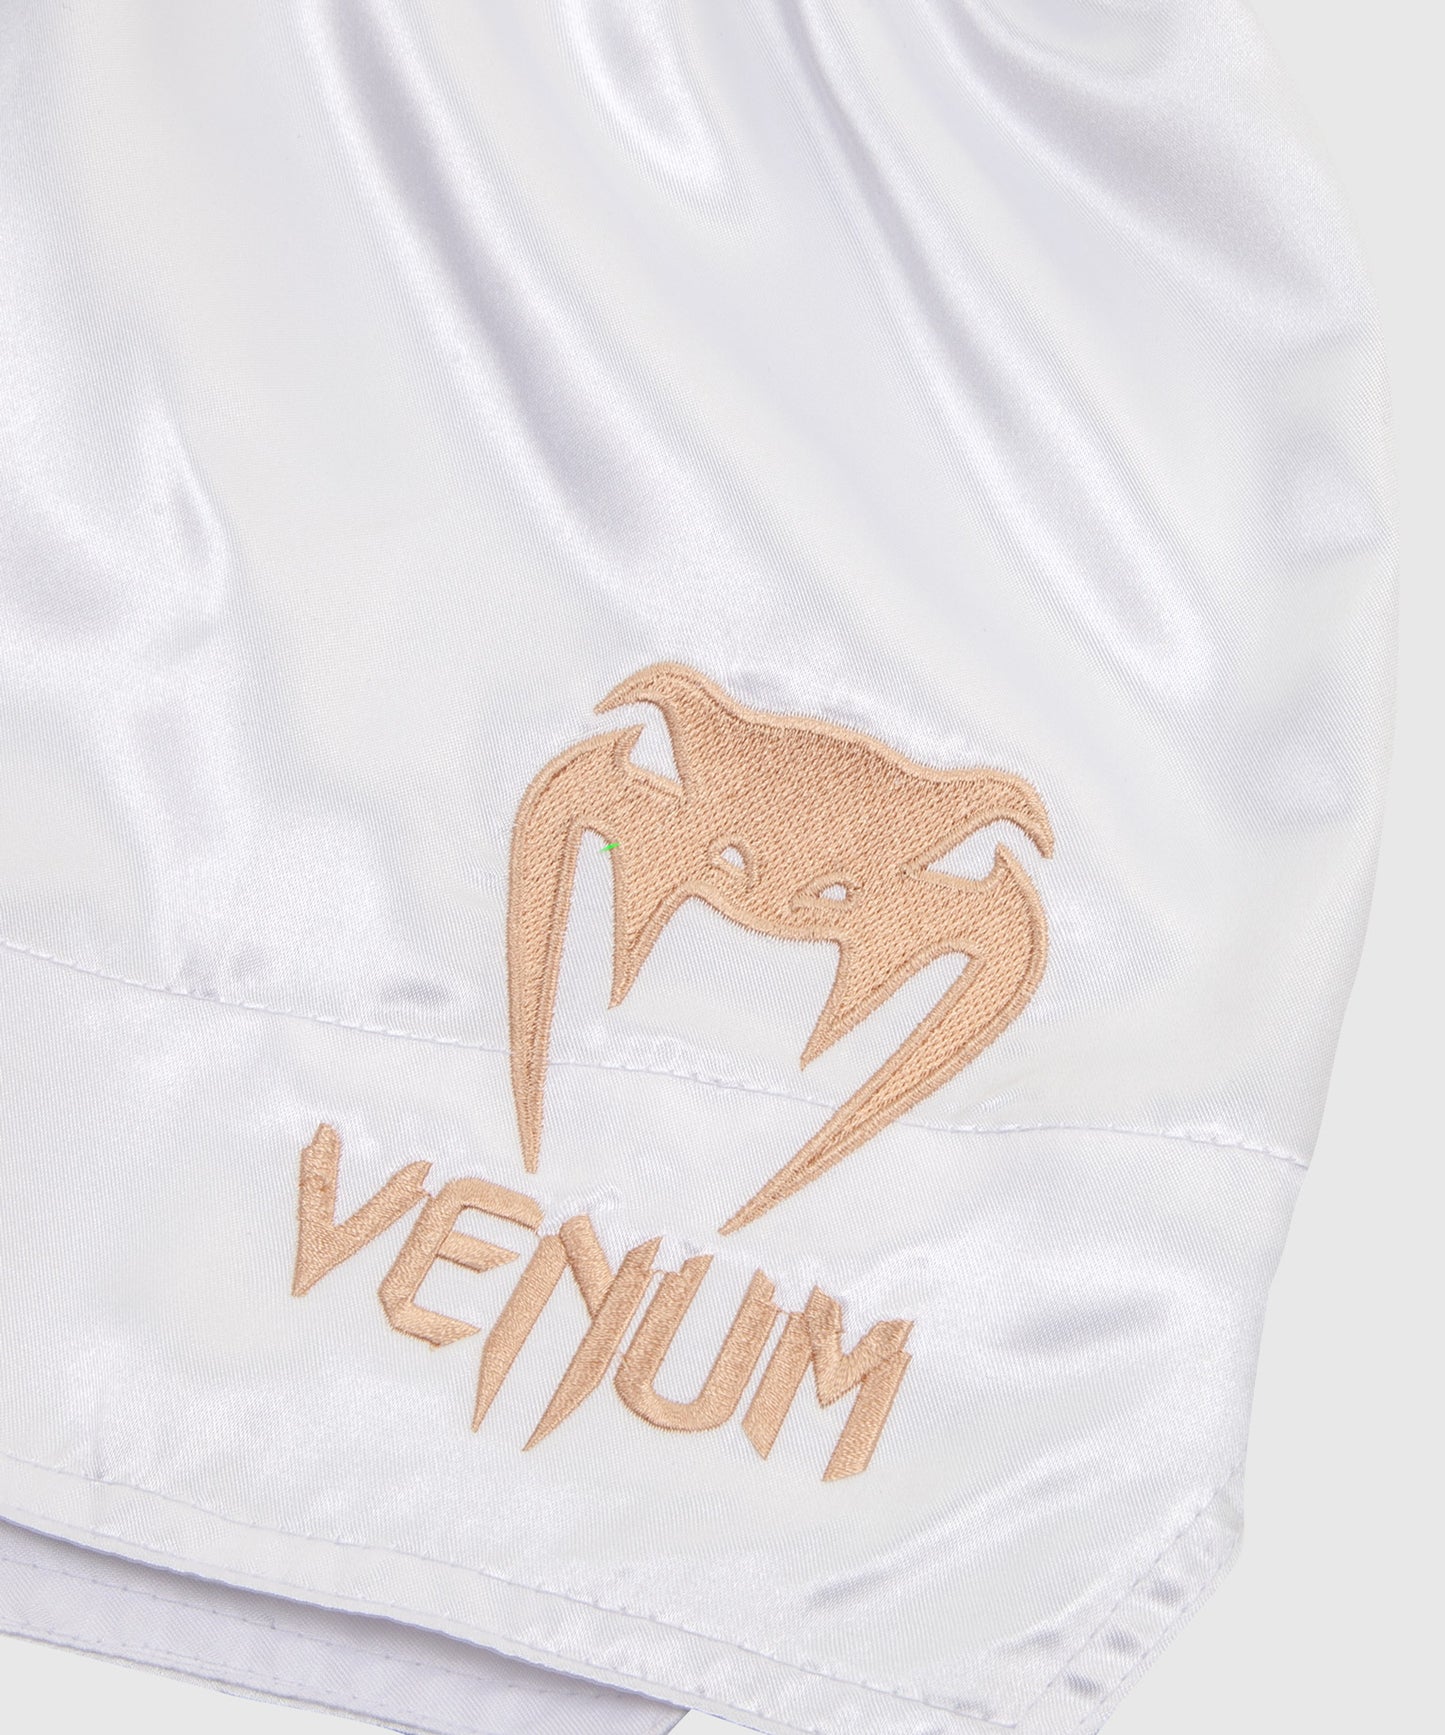 Venum Classic ムエタイショーツ - ホワイト/ゴールド